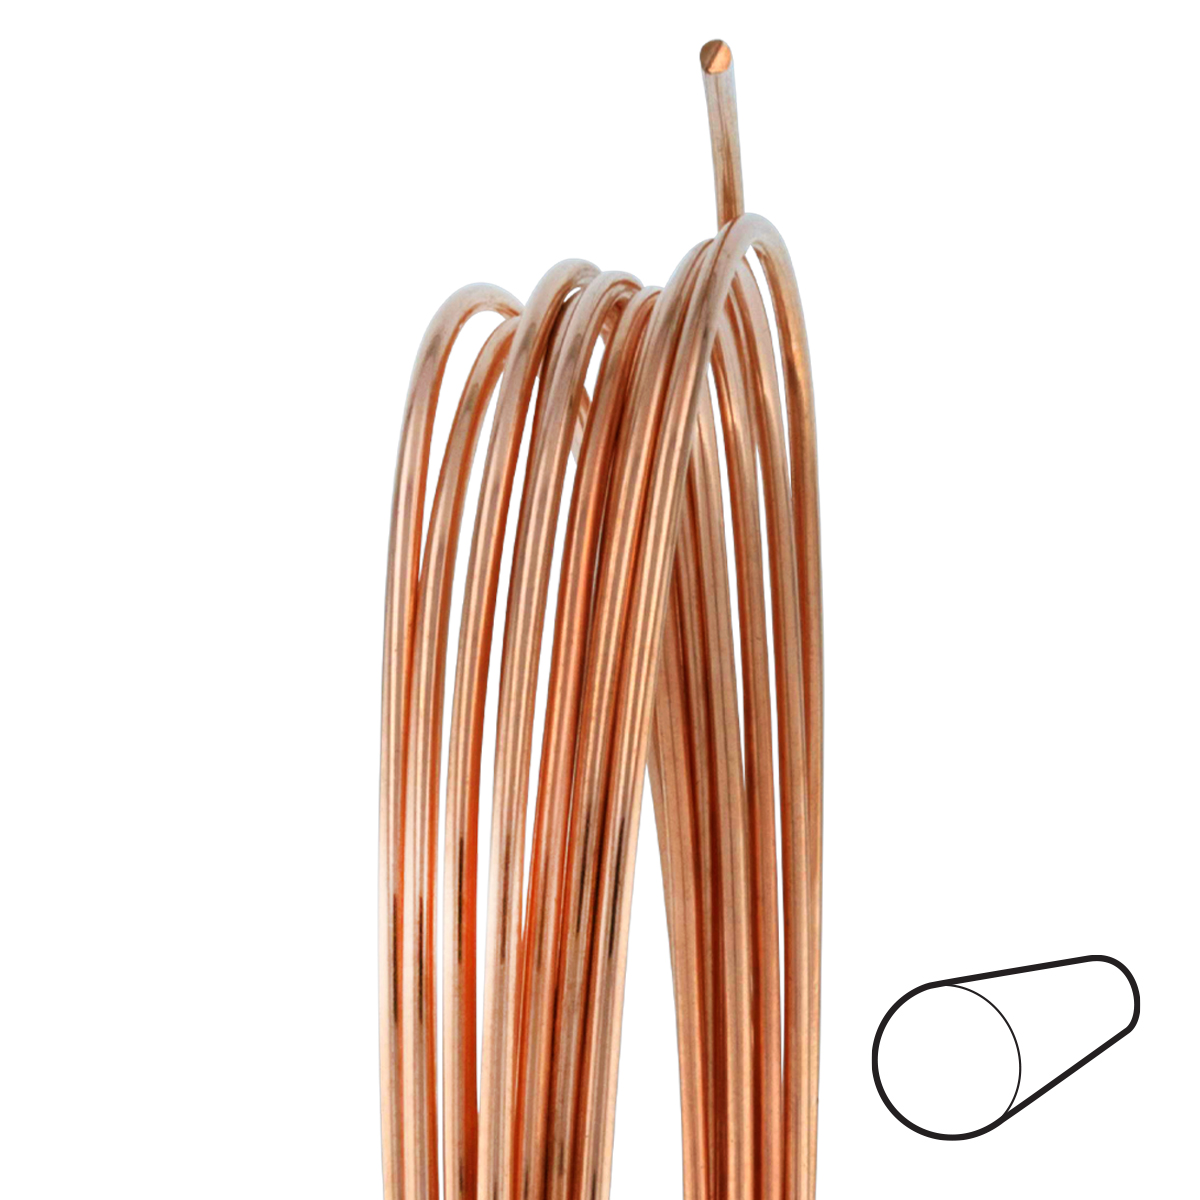 22 Gauge Round Dead Soft Copper Wire: Wire Jewelry, Wire Wrap Tutorials